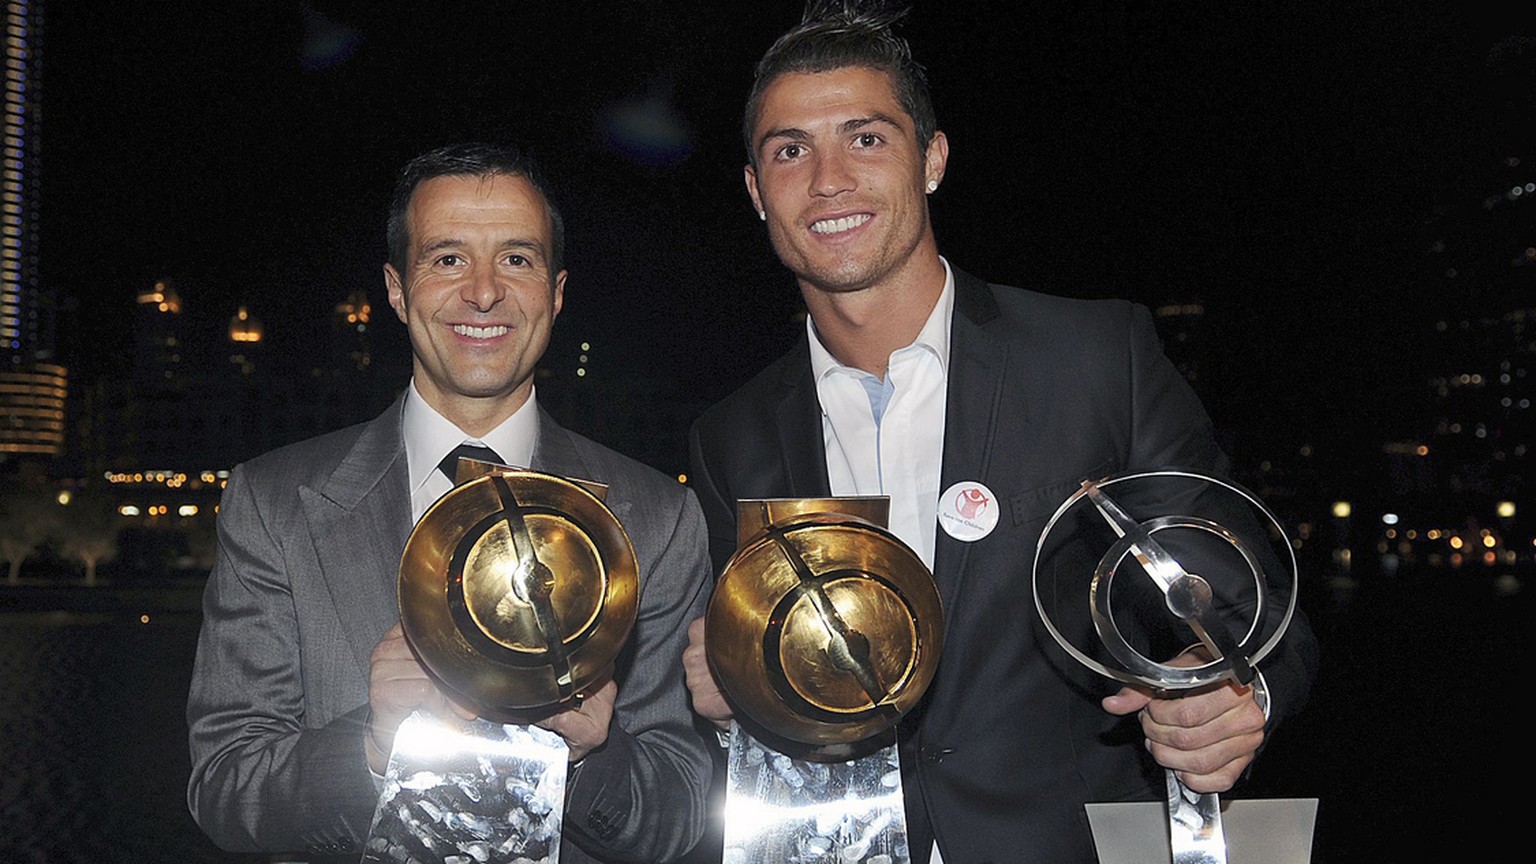 Der Berater und sein berühmtester Klient: Jorge Mendes (links) mit Cristiano Ronaldo.